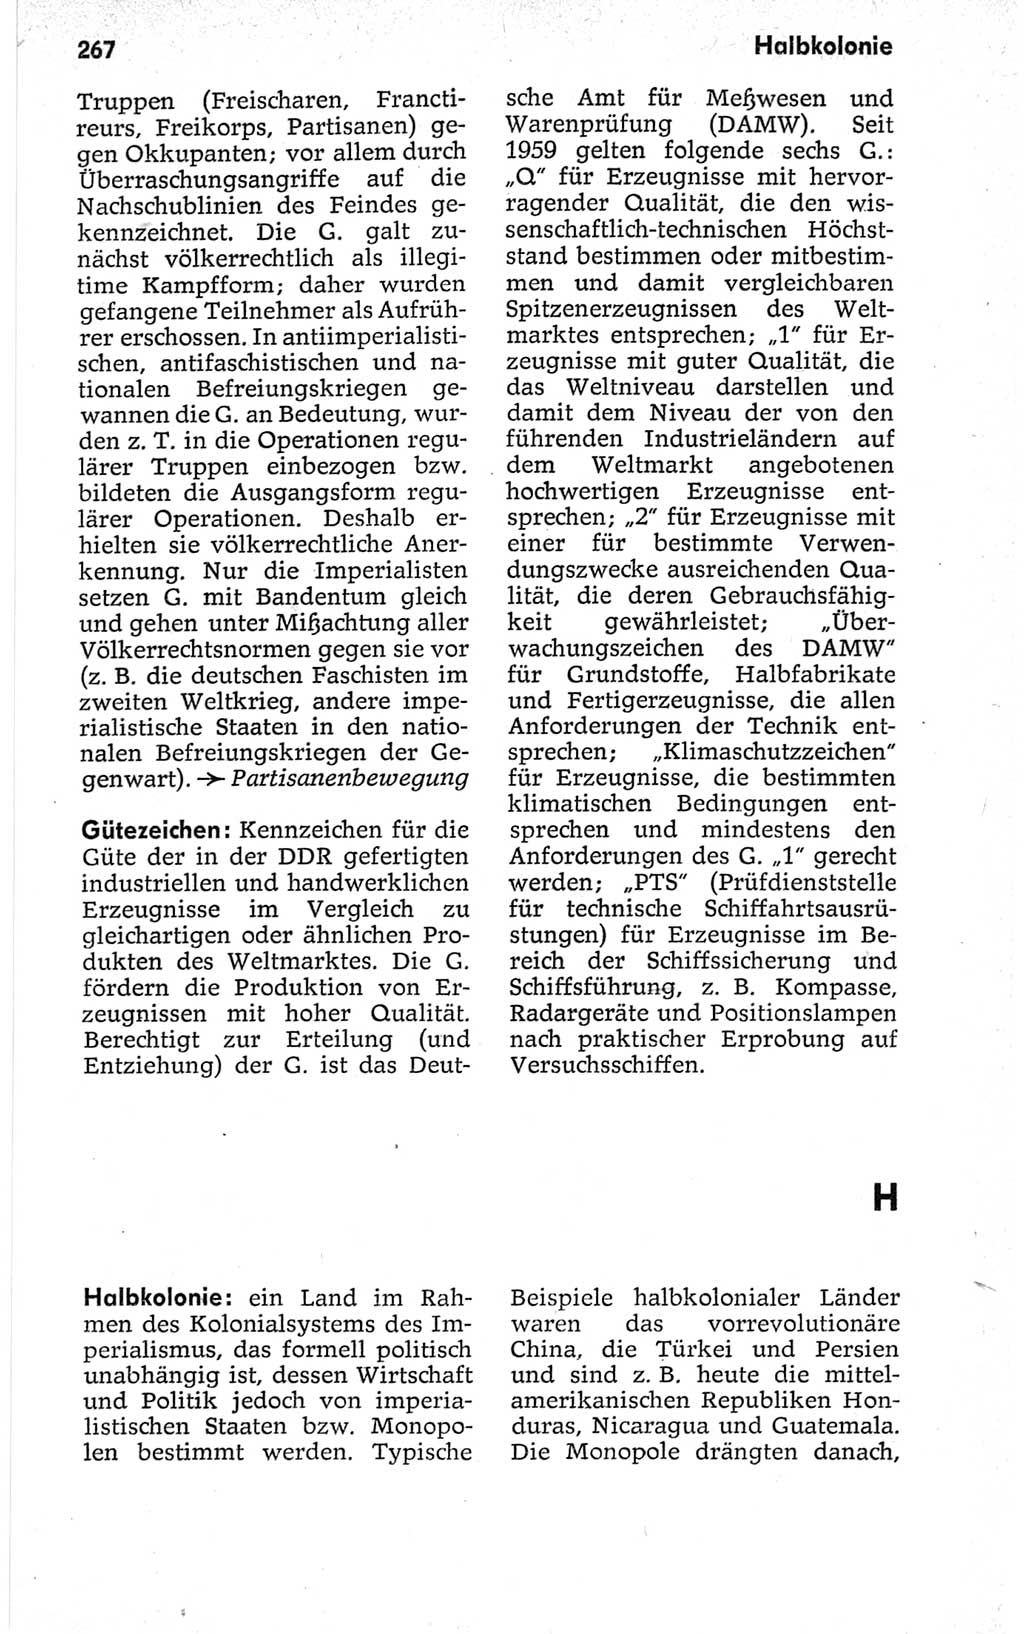 Kleines politisches Wörterbuch [Deutsche Demokratische Republik (DDR)] 1967, Seite 267 (Kl. pol. Wb. DDR 1967, S. 267)